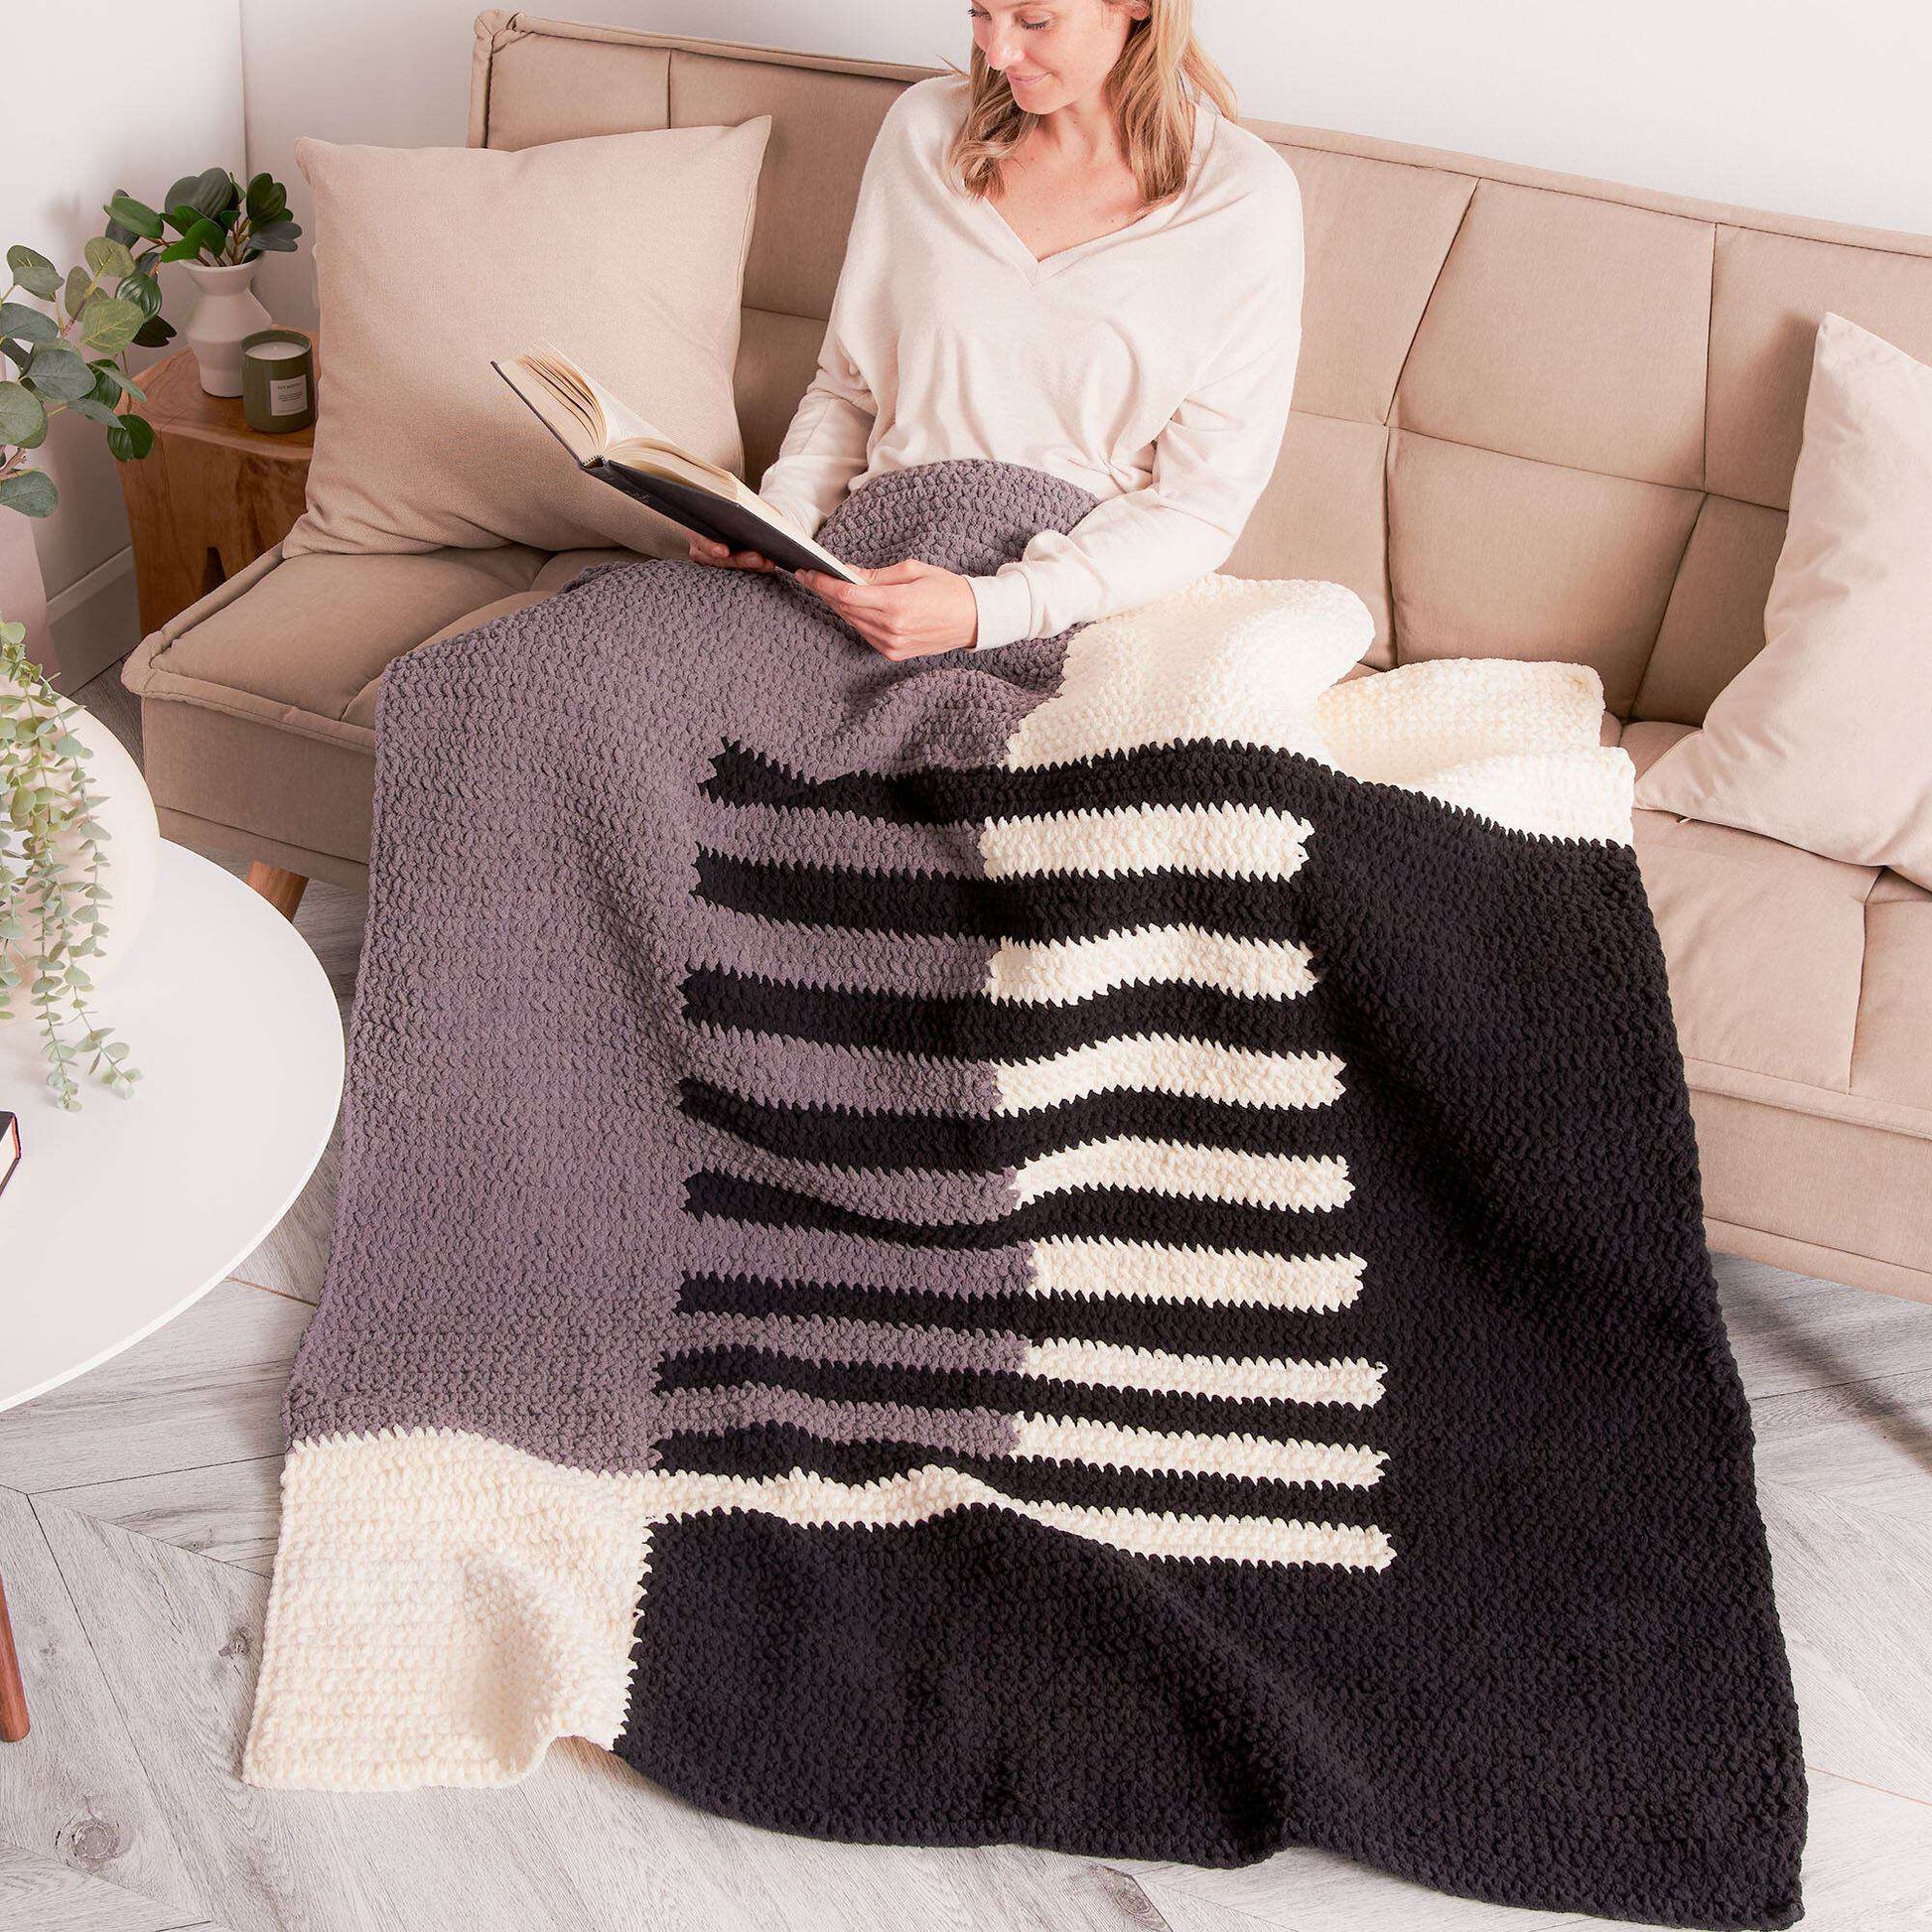 Free Bernat Modern Geometry Crochet Blanket Pattern